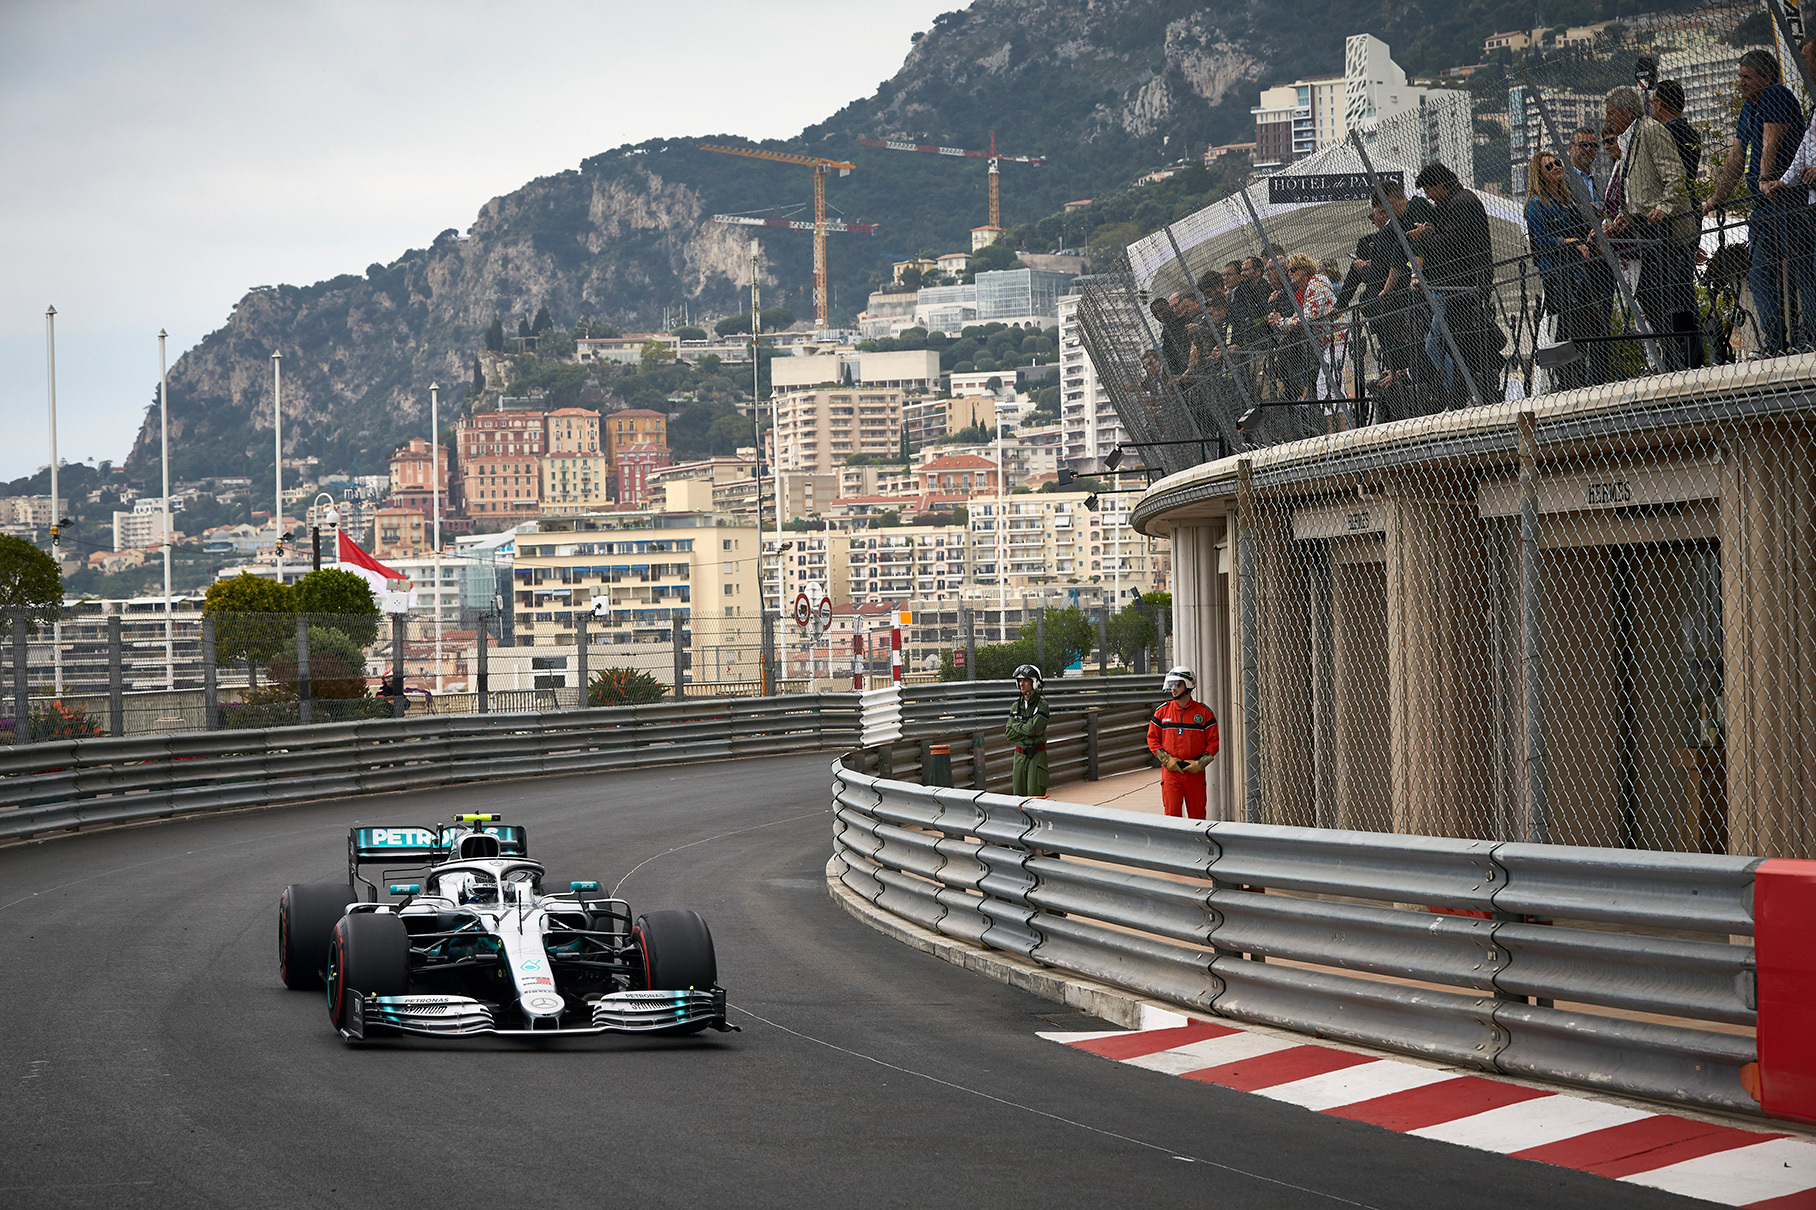 Гран-при Монако — исторически главная городская гонка мира